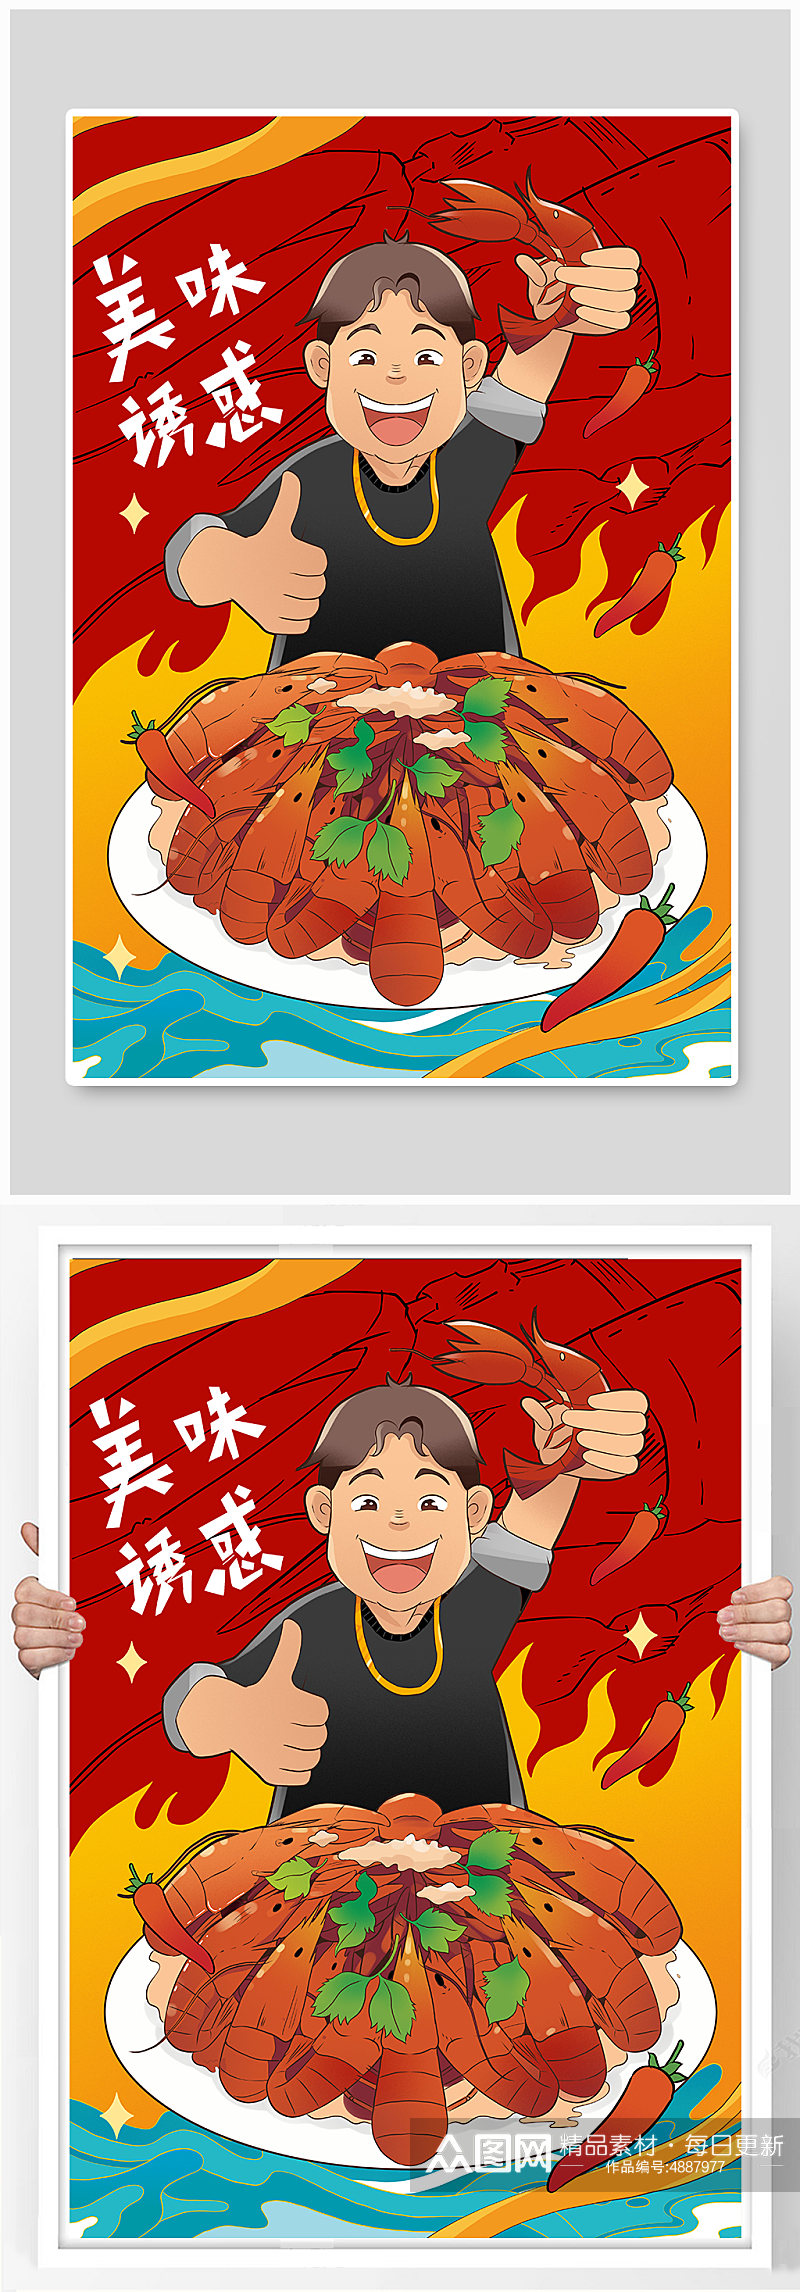 点赞小龙虾美食人物插画素材